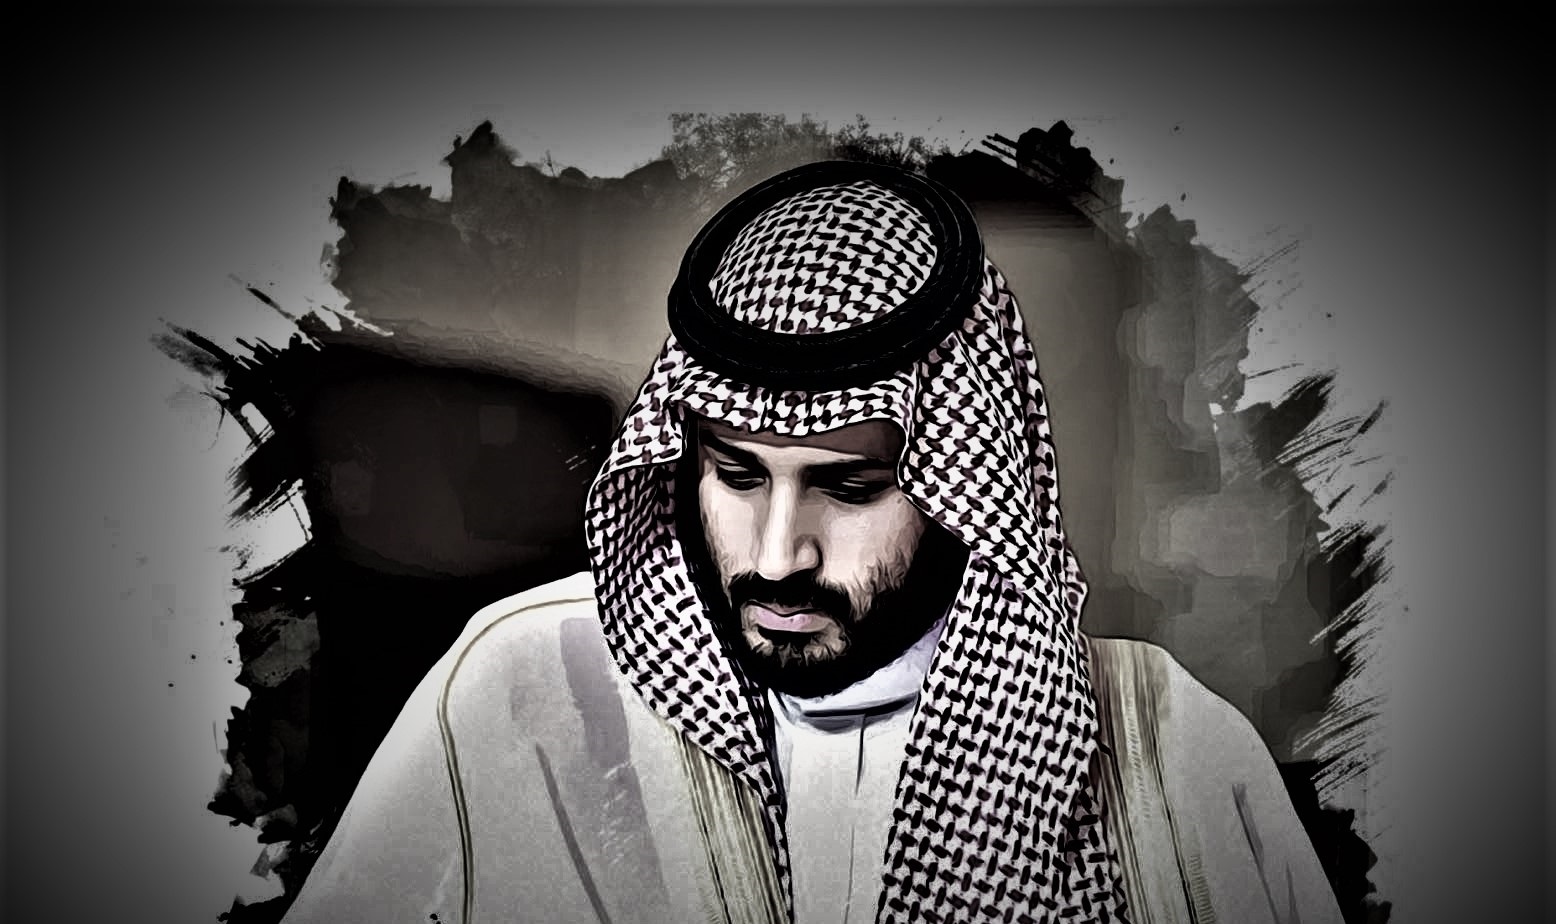 مشاريع الأمير الخيالية كوابيس تهدد السعوديين